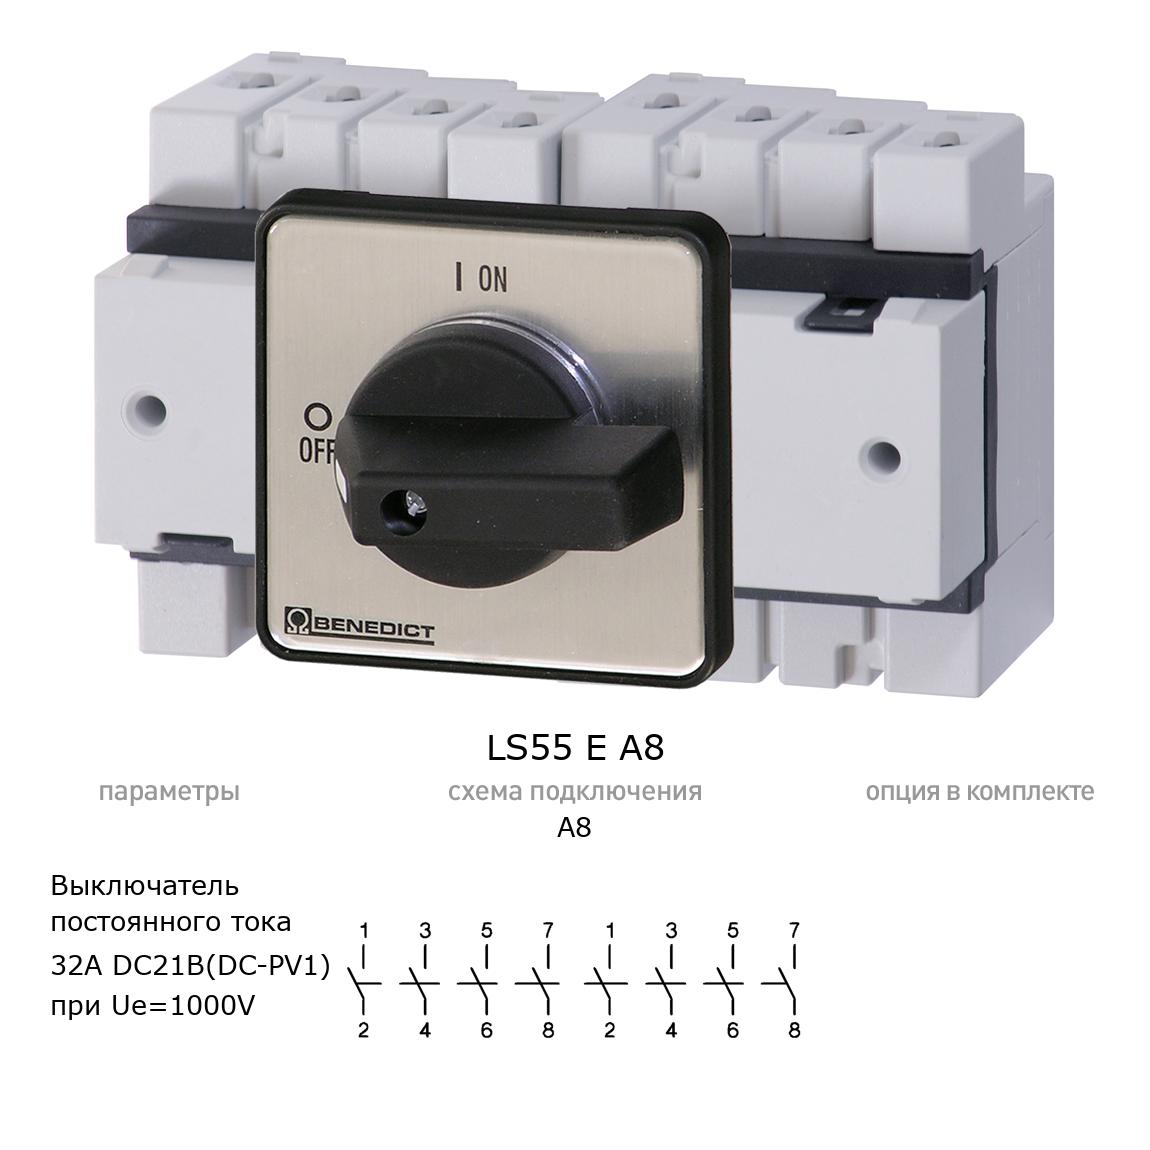 Кулачковый переключатель для постоянного тока (DC) LS55 E A8 BENEDICT